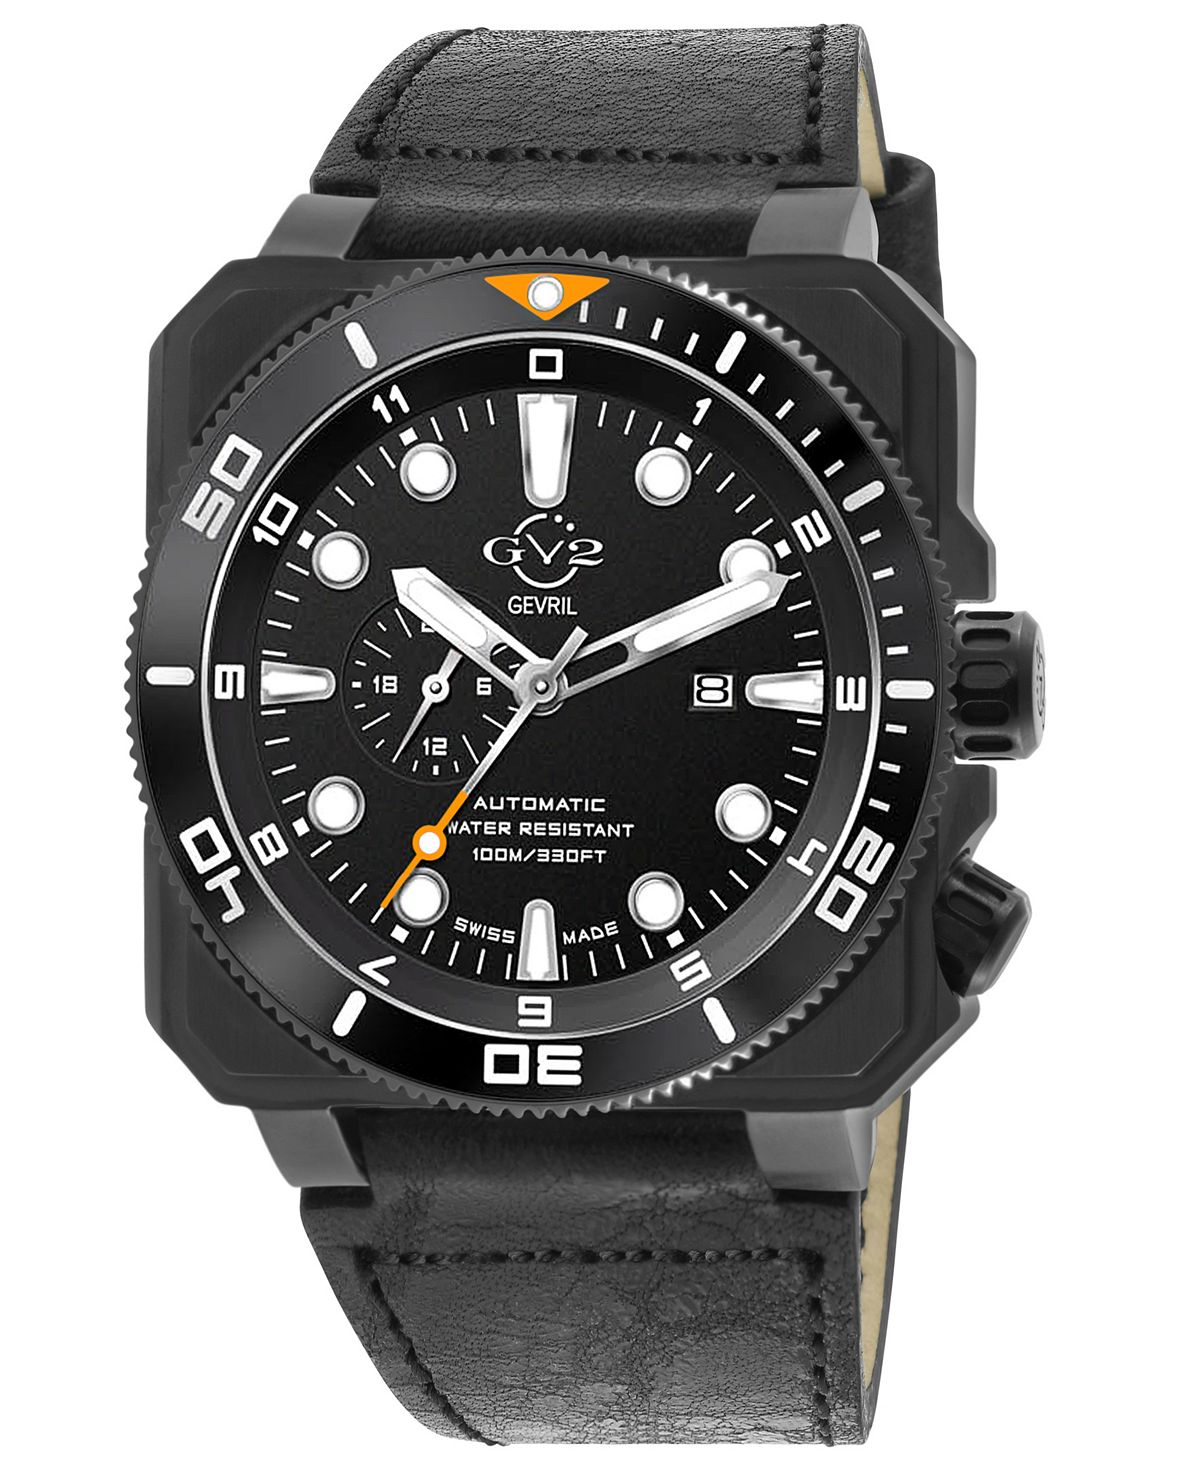 Мужские часы XO Submarine швейцарские автоматические черные кожаные часы 44 мм GV2 by Gevril цена и фото